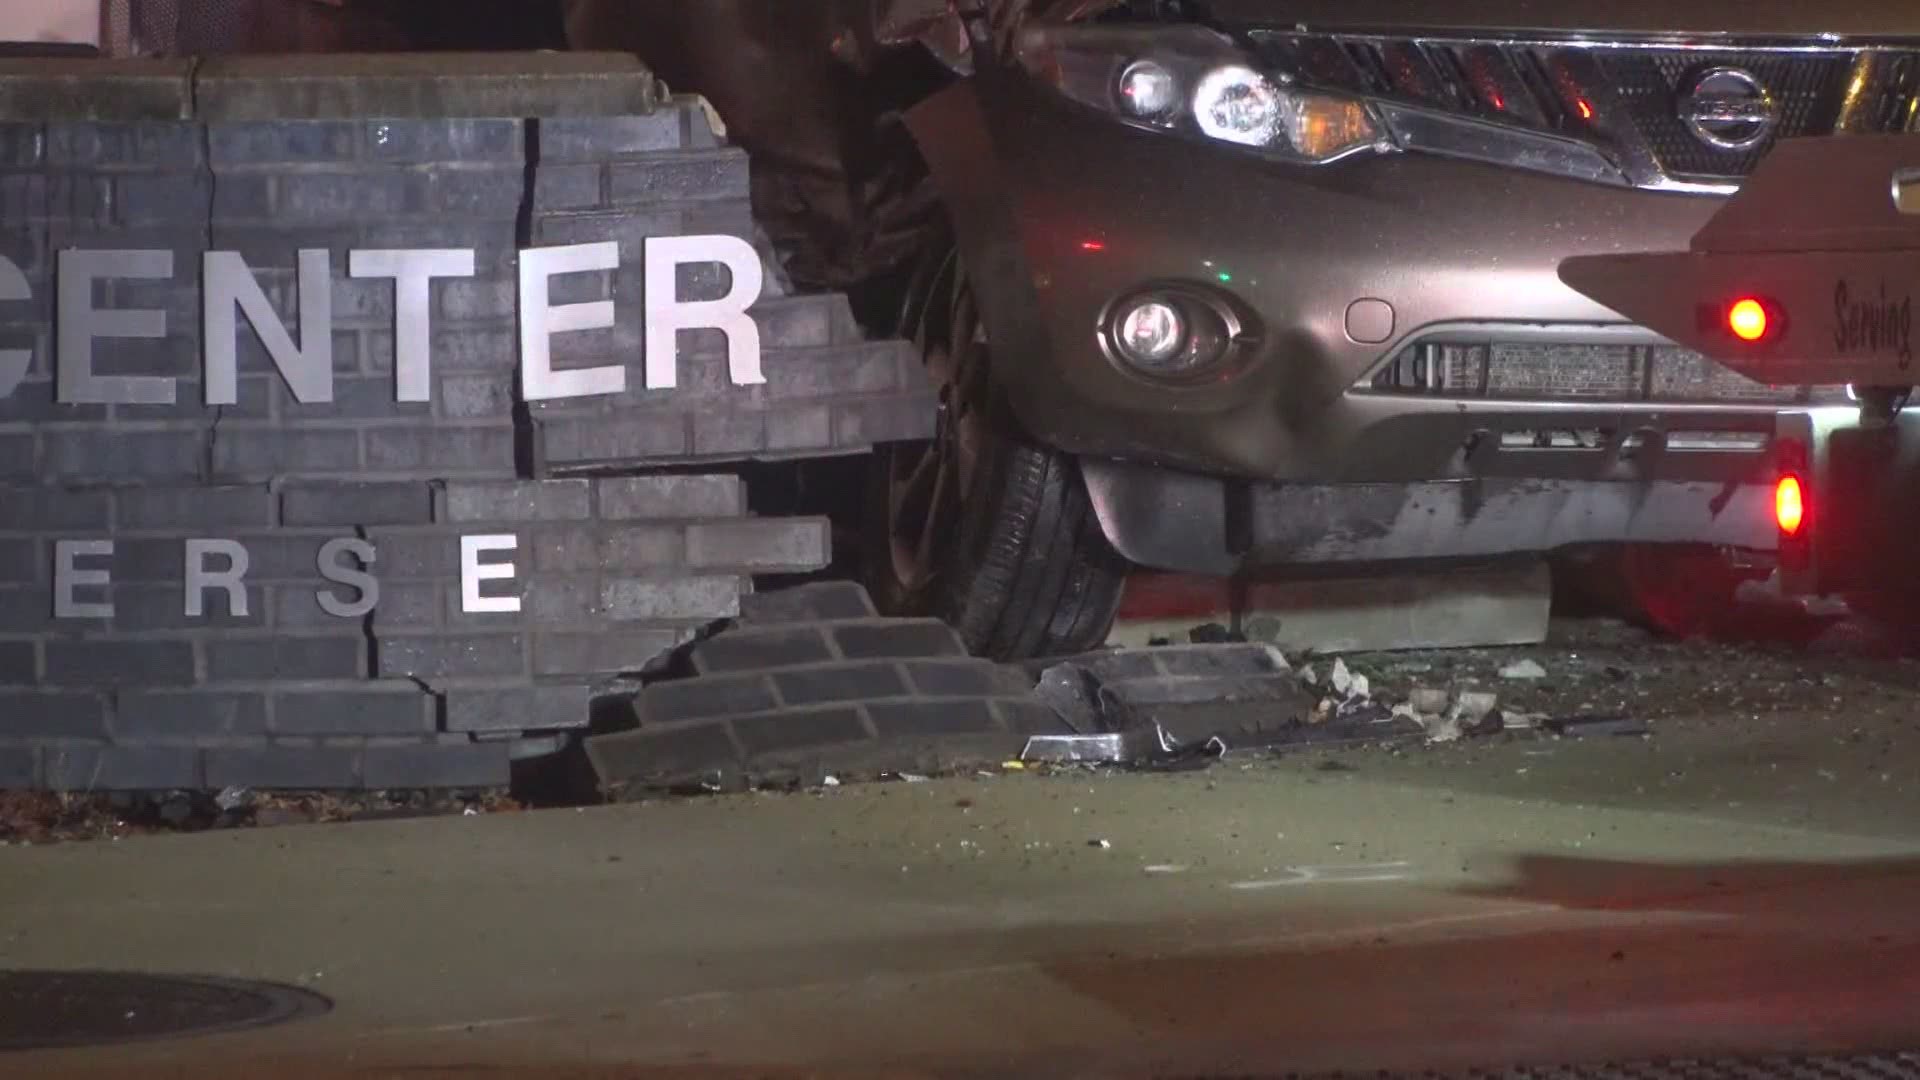 Vehicle crash at East Hills Center, damaging restaurant building